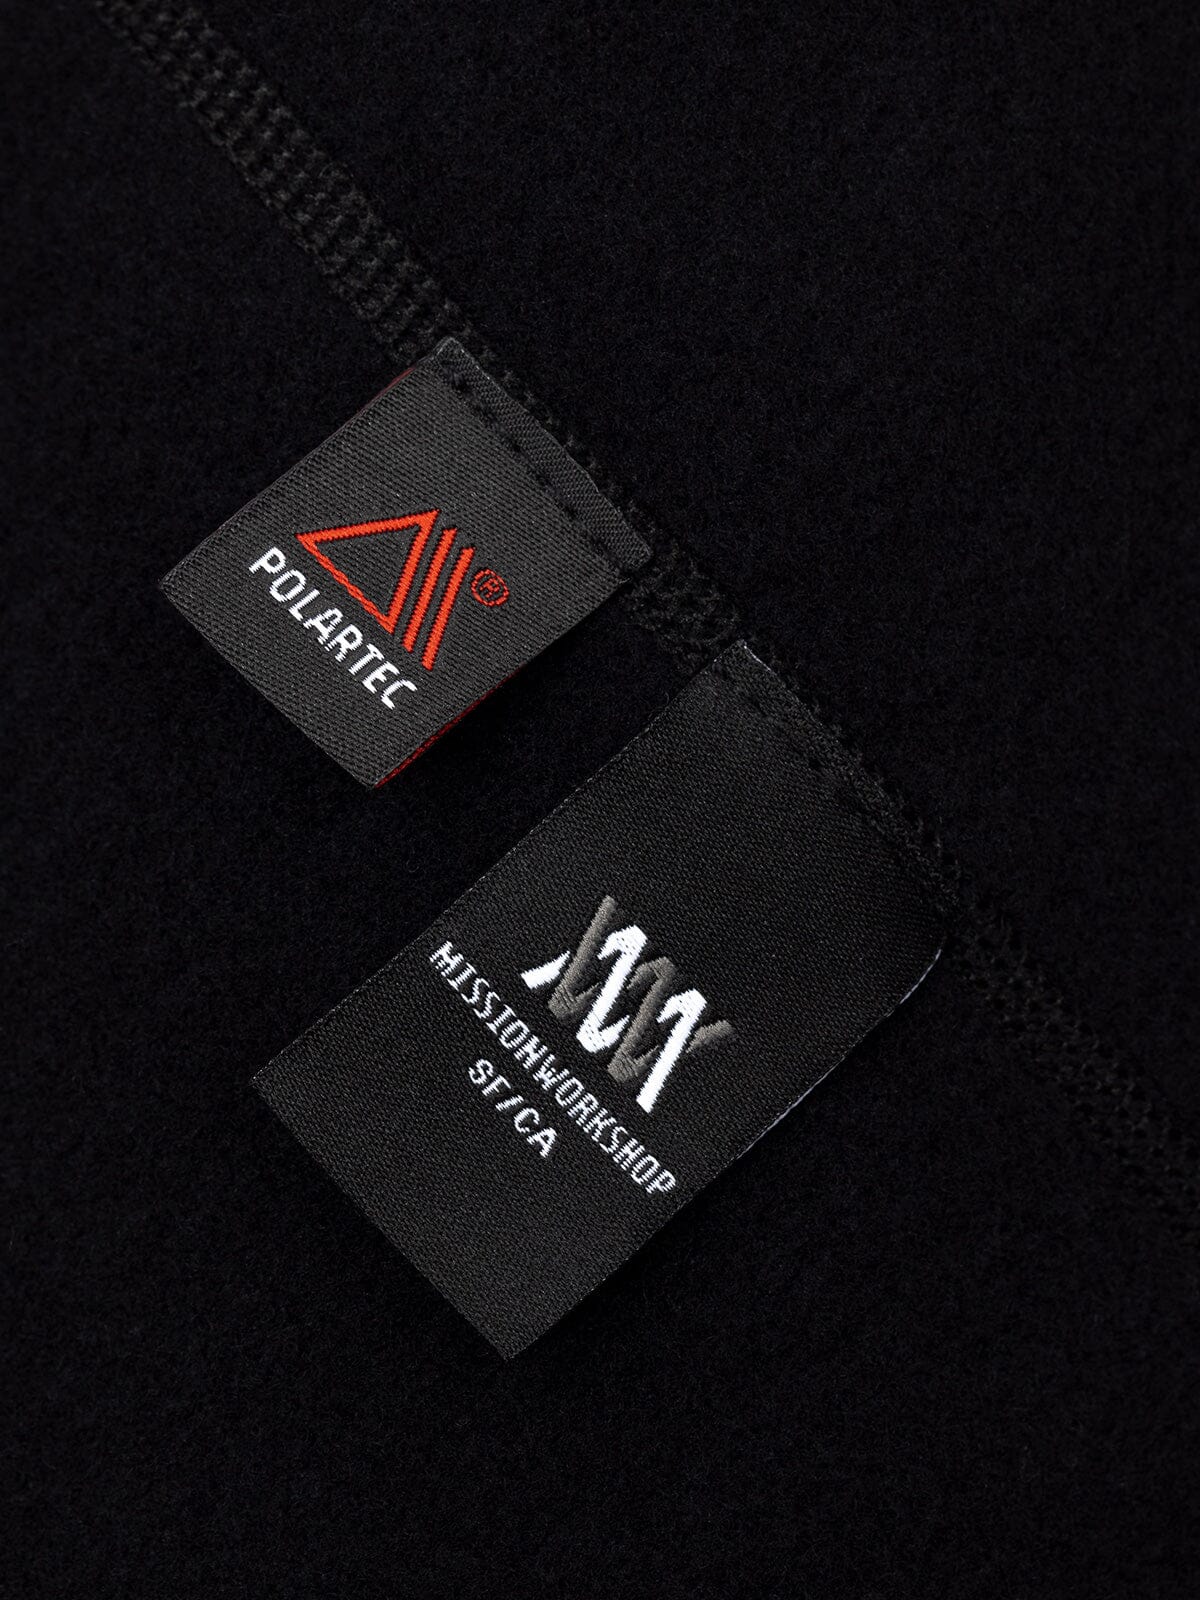 Mason : Power Wool från Mission Workshop - vädertåliga väskor och tekniska kläder - San Francisco och Los Angeles - byggda för att tåla - garanterade för alltid